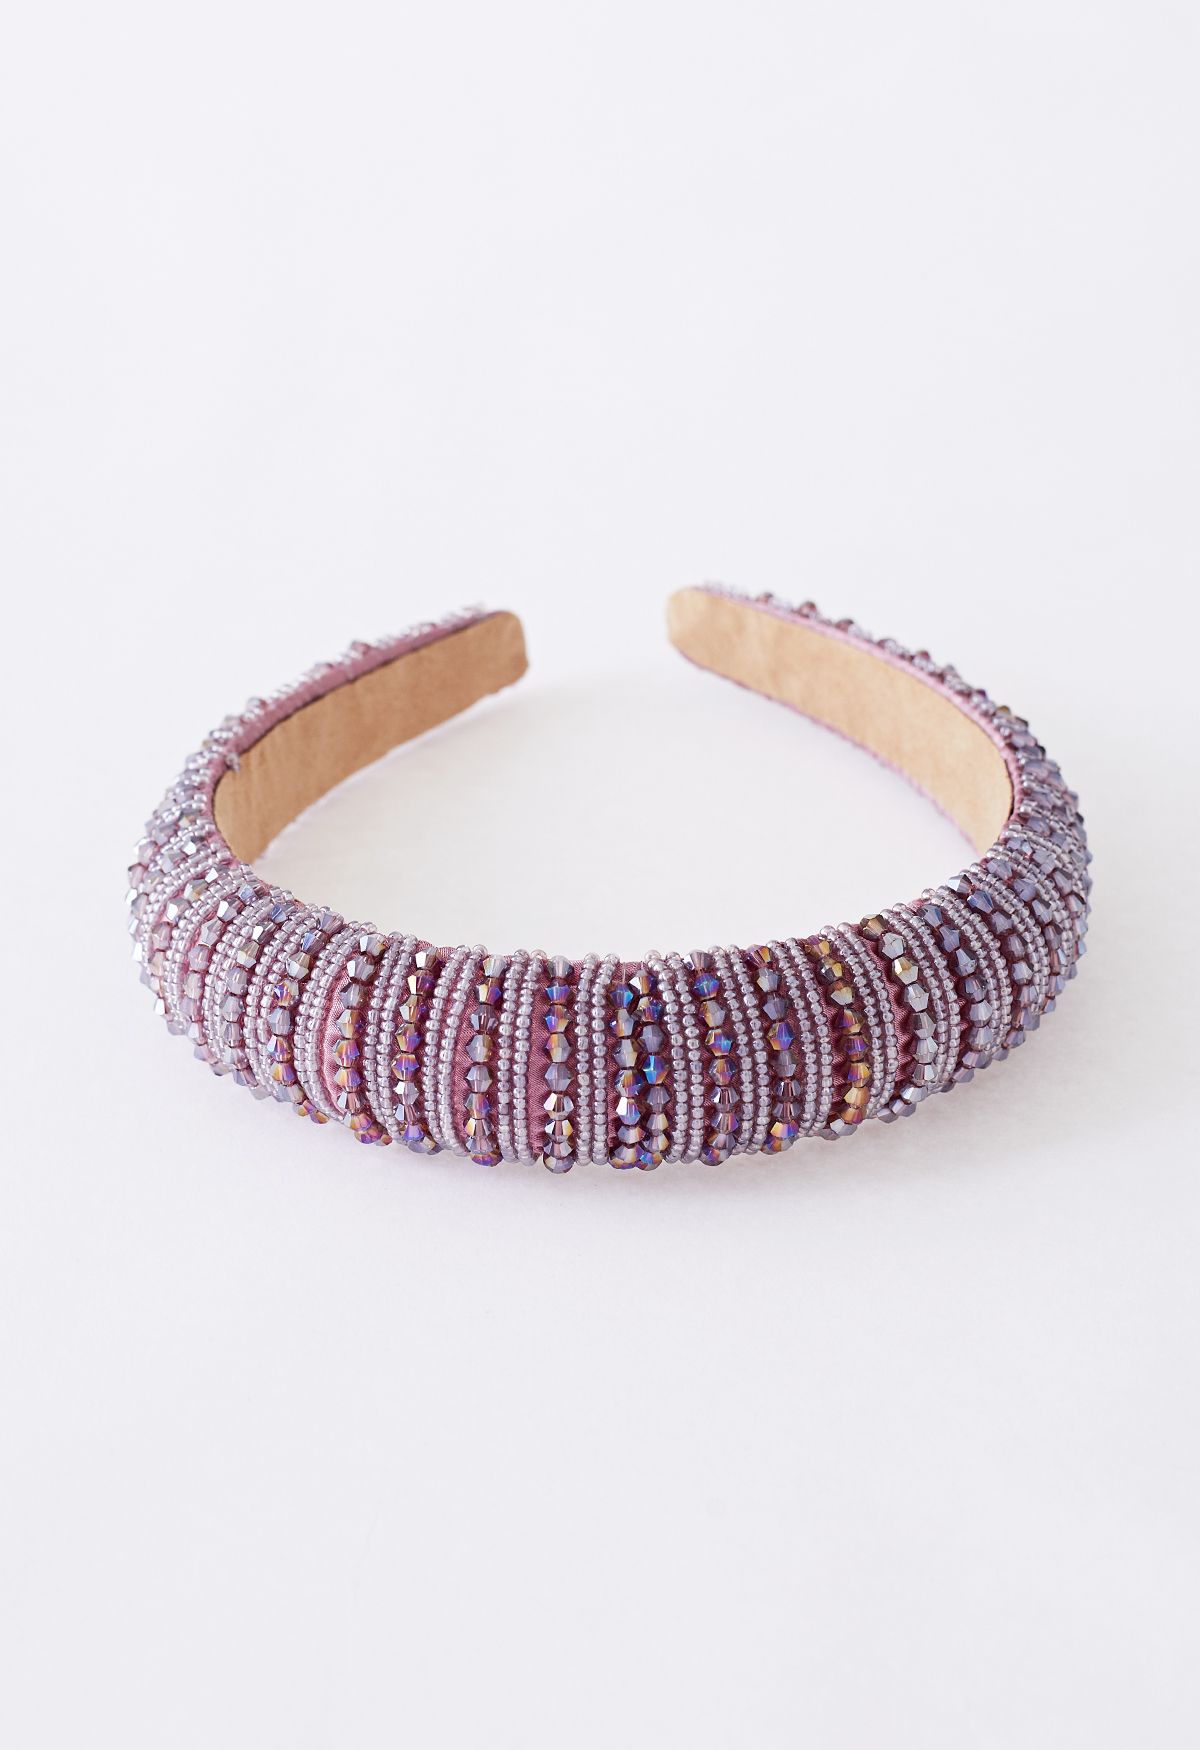 Full Rhinestone Crystal Headband in Lilac